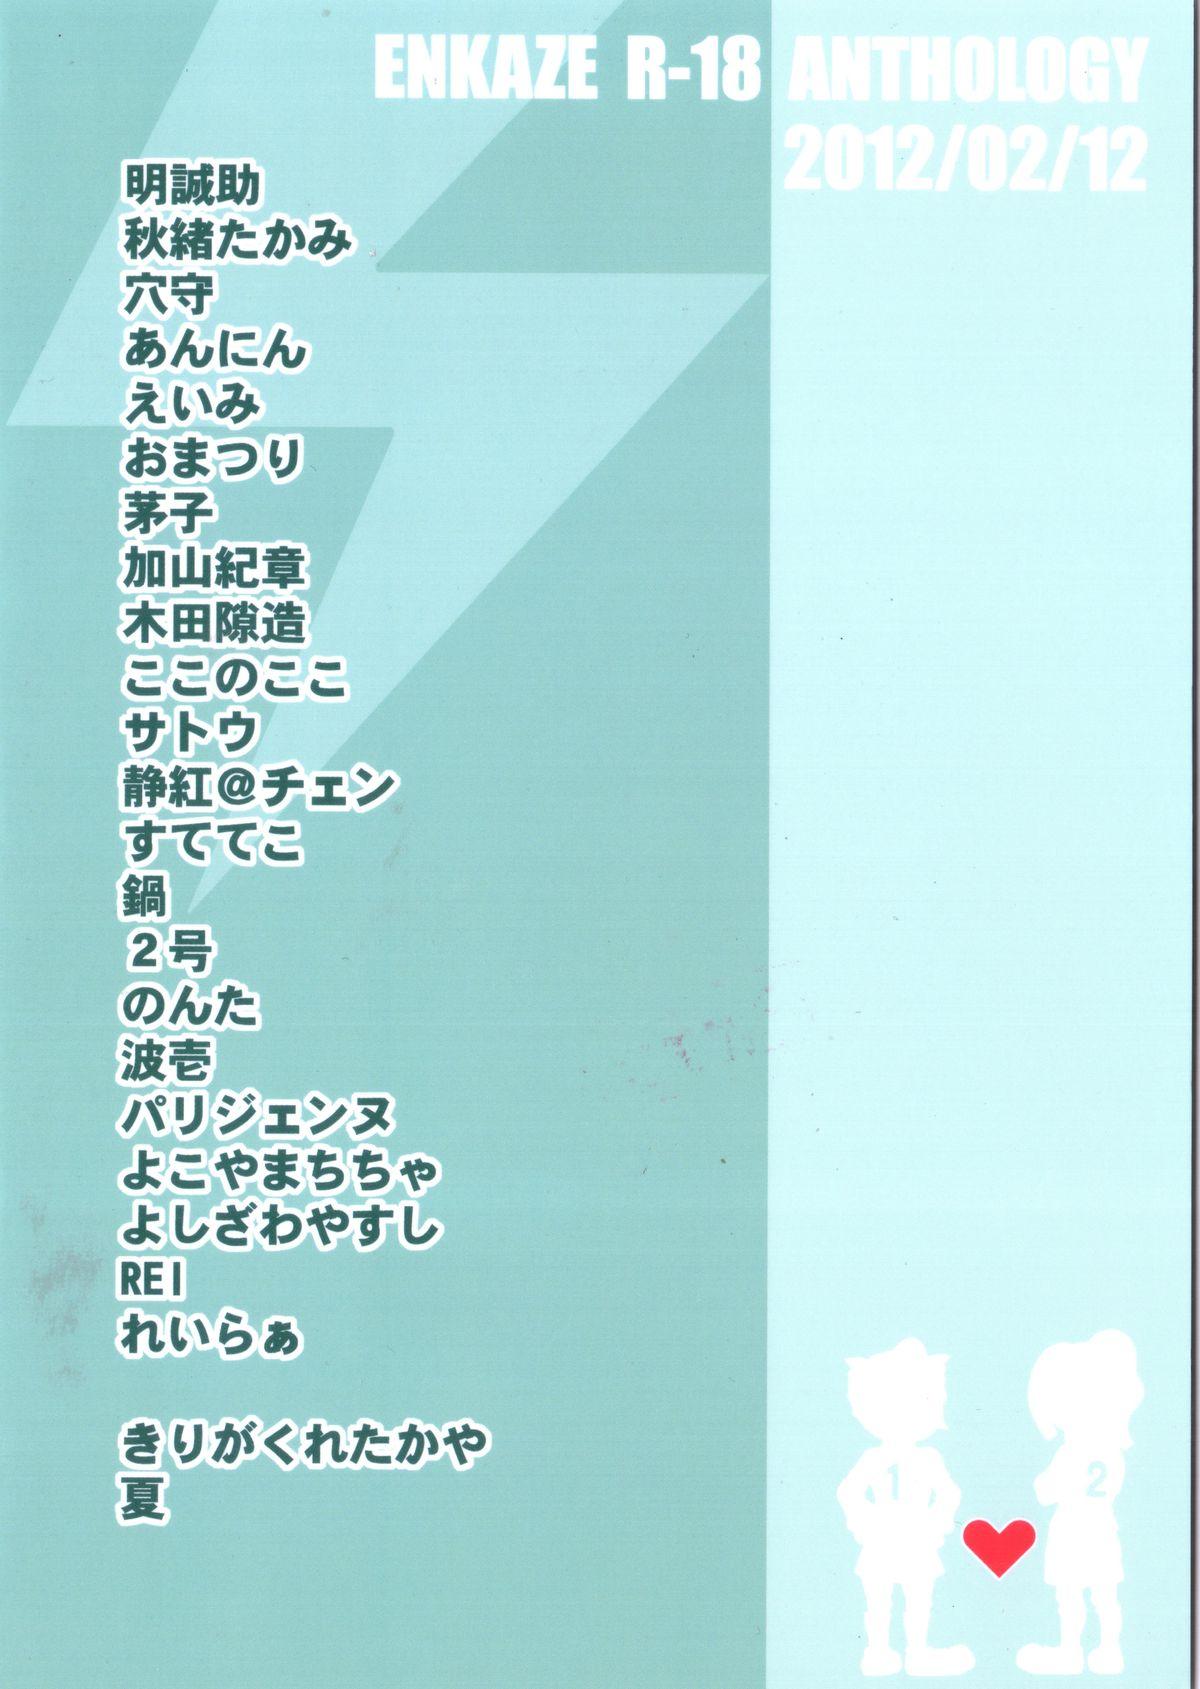 Curves Kirigakure Takaya (Aniki Otokodou) - ×××× Yarouze! (Inazuma Eleven) - Inazuma eleven Cream - Page 2